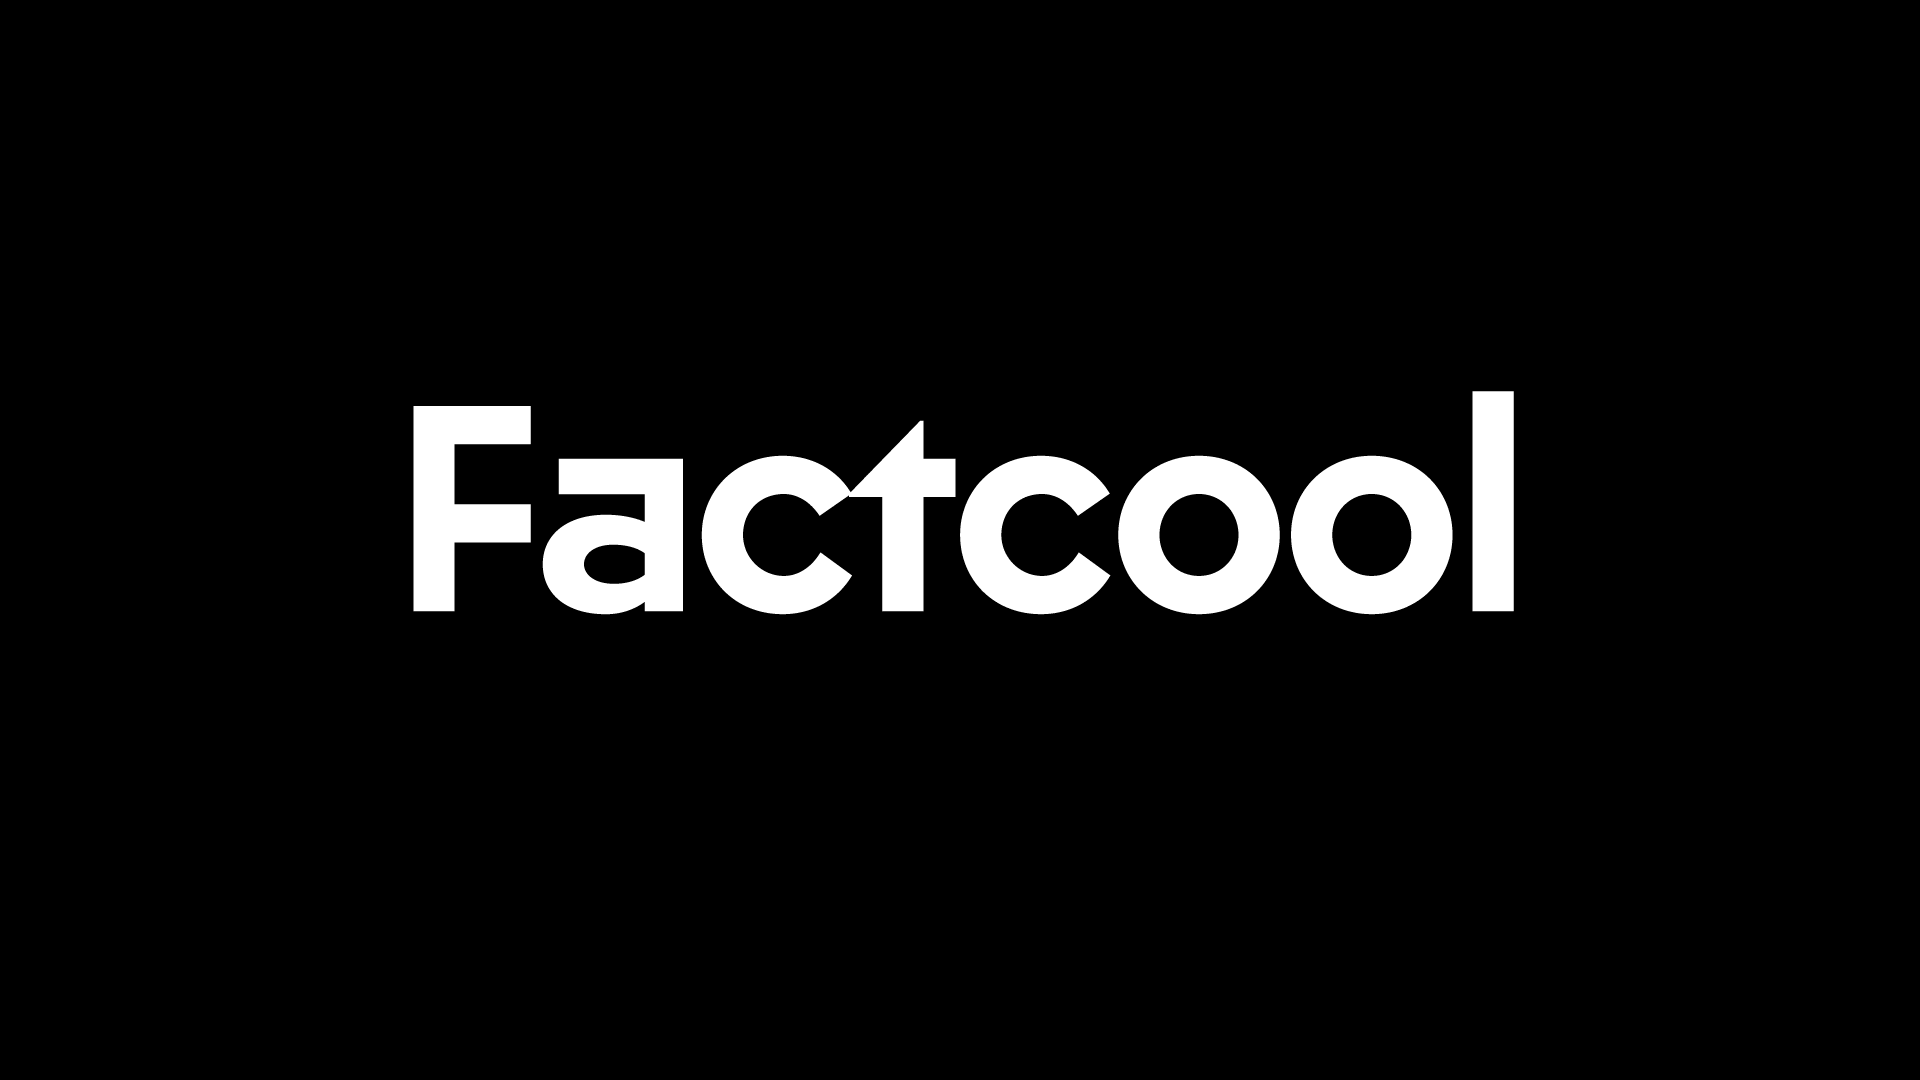 Custom Fonts: Factcool